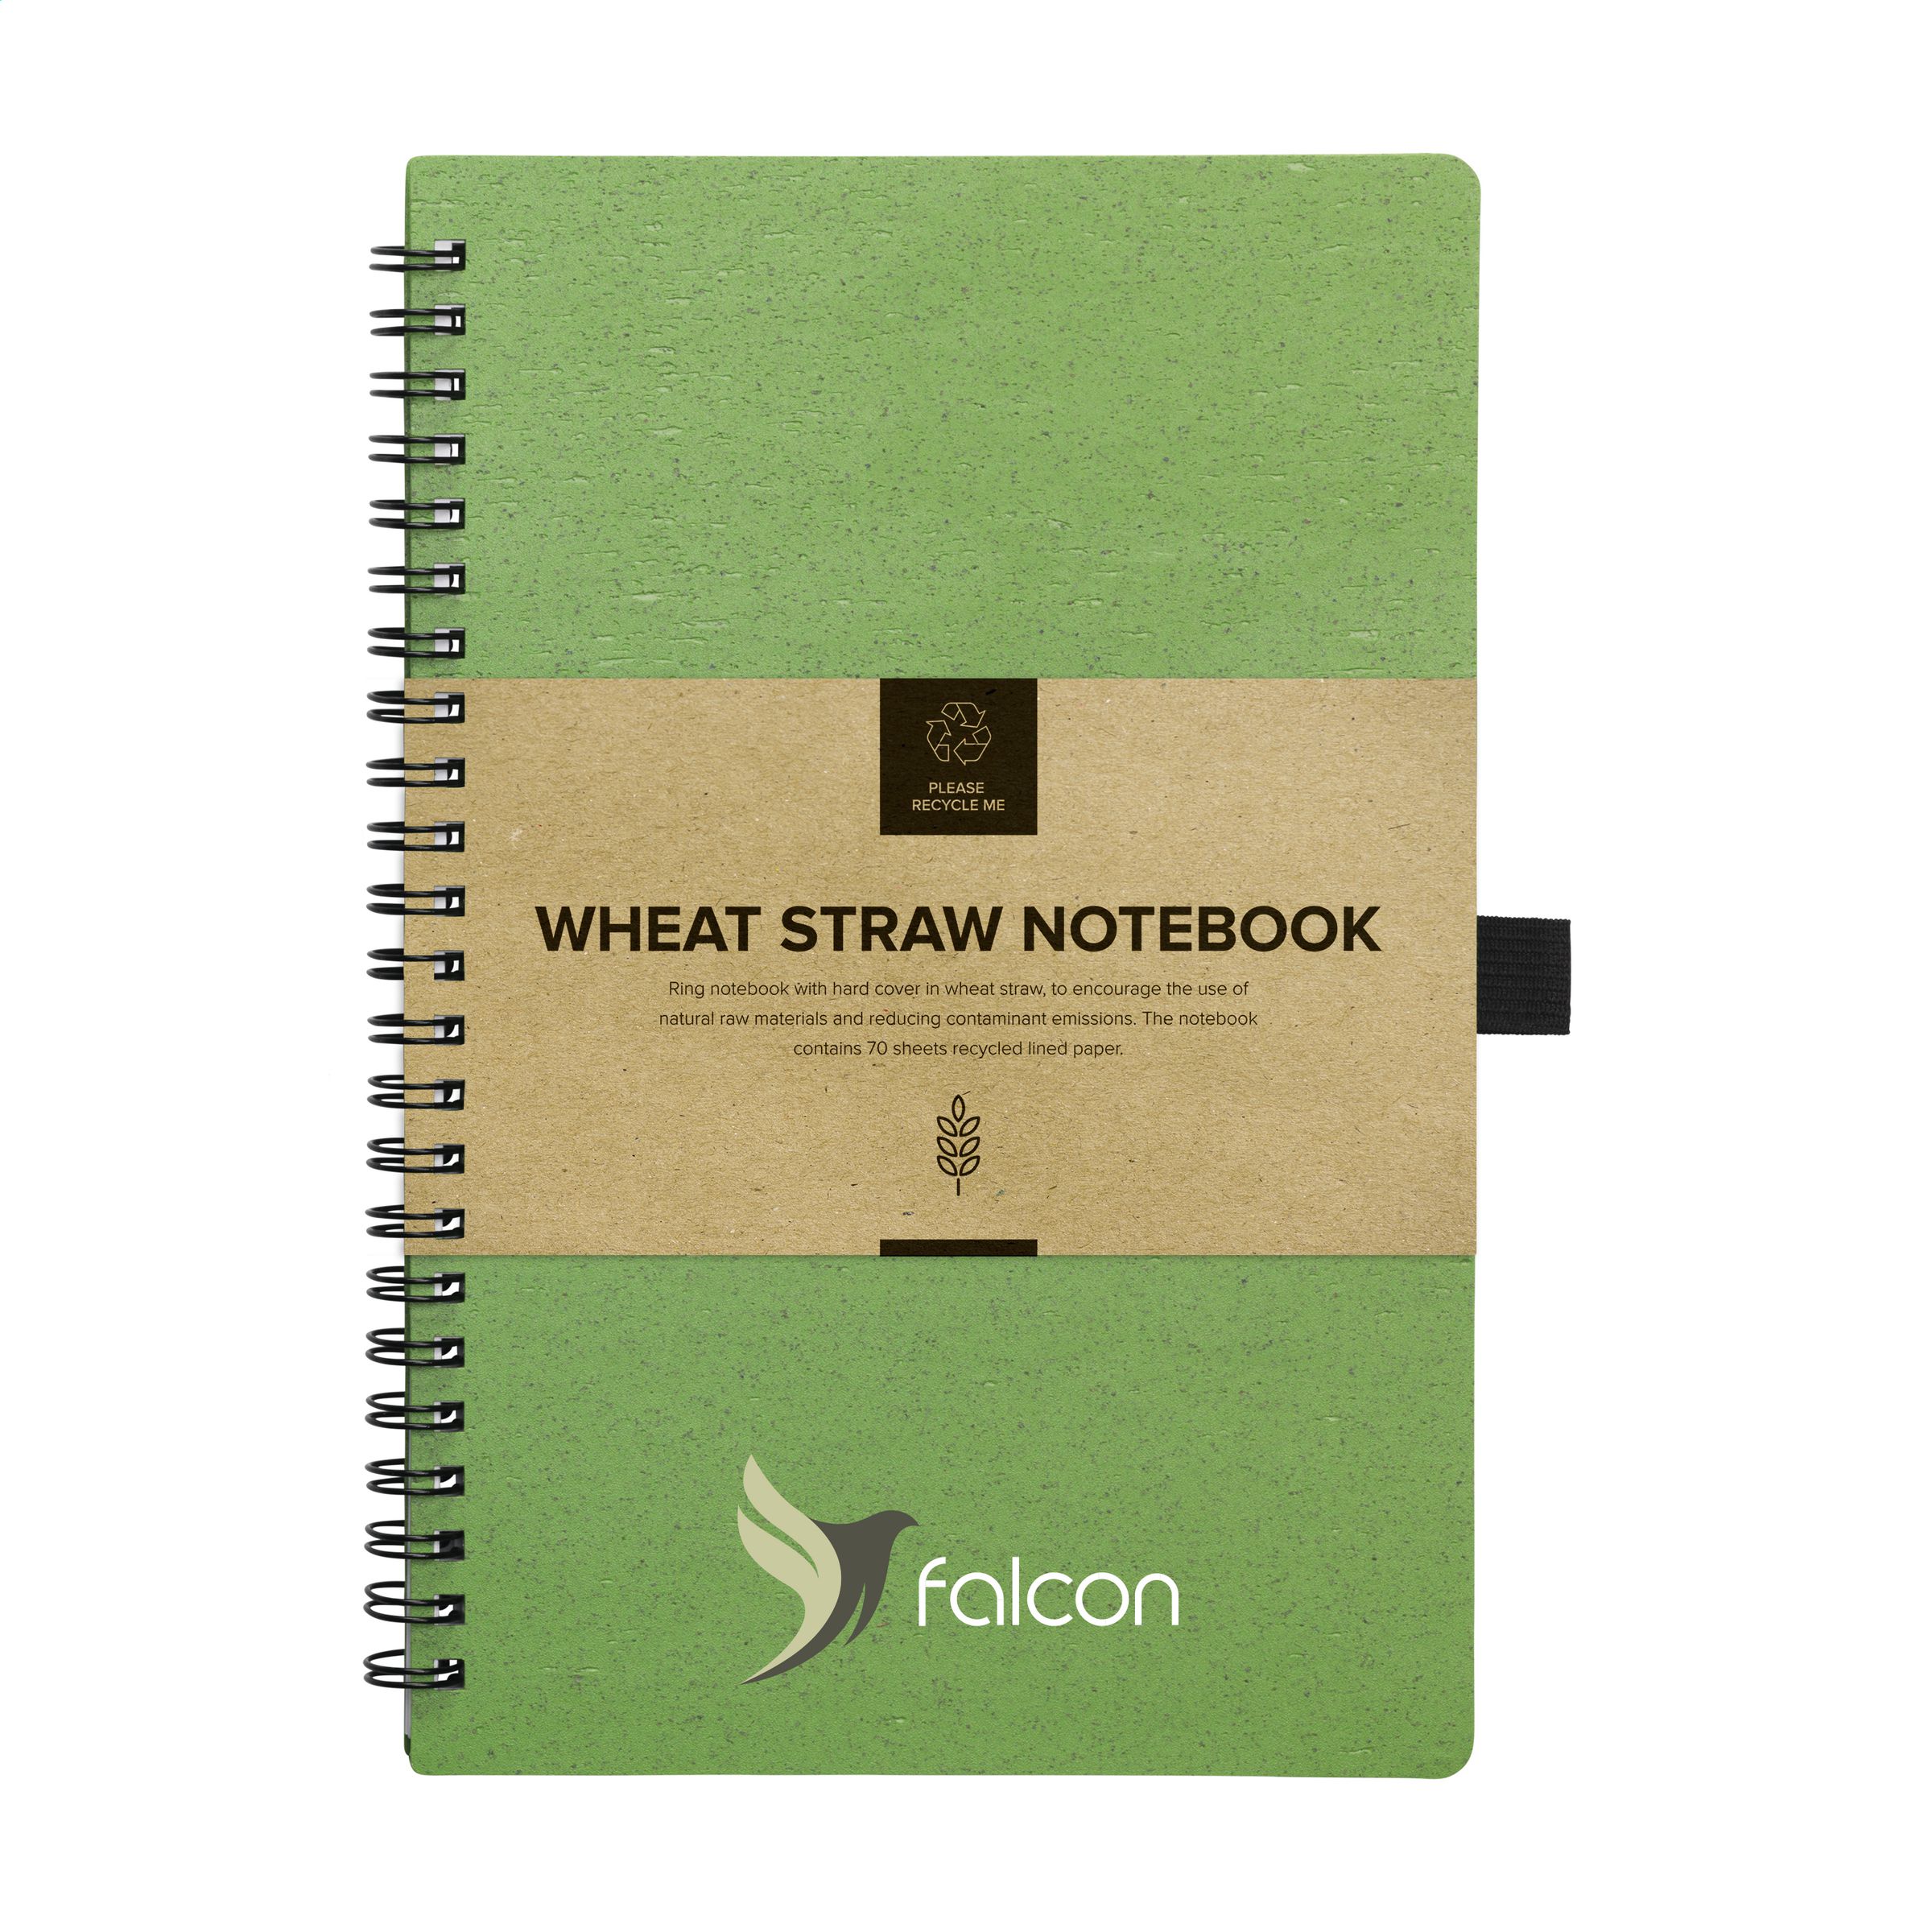 Eik Associëren heet Wheatfiber Notebook A5 notitieboekje tarwestro bedrukken? - Voordelig &  snel bestellen